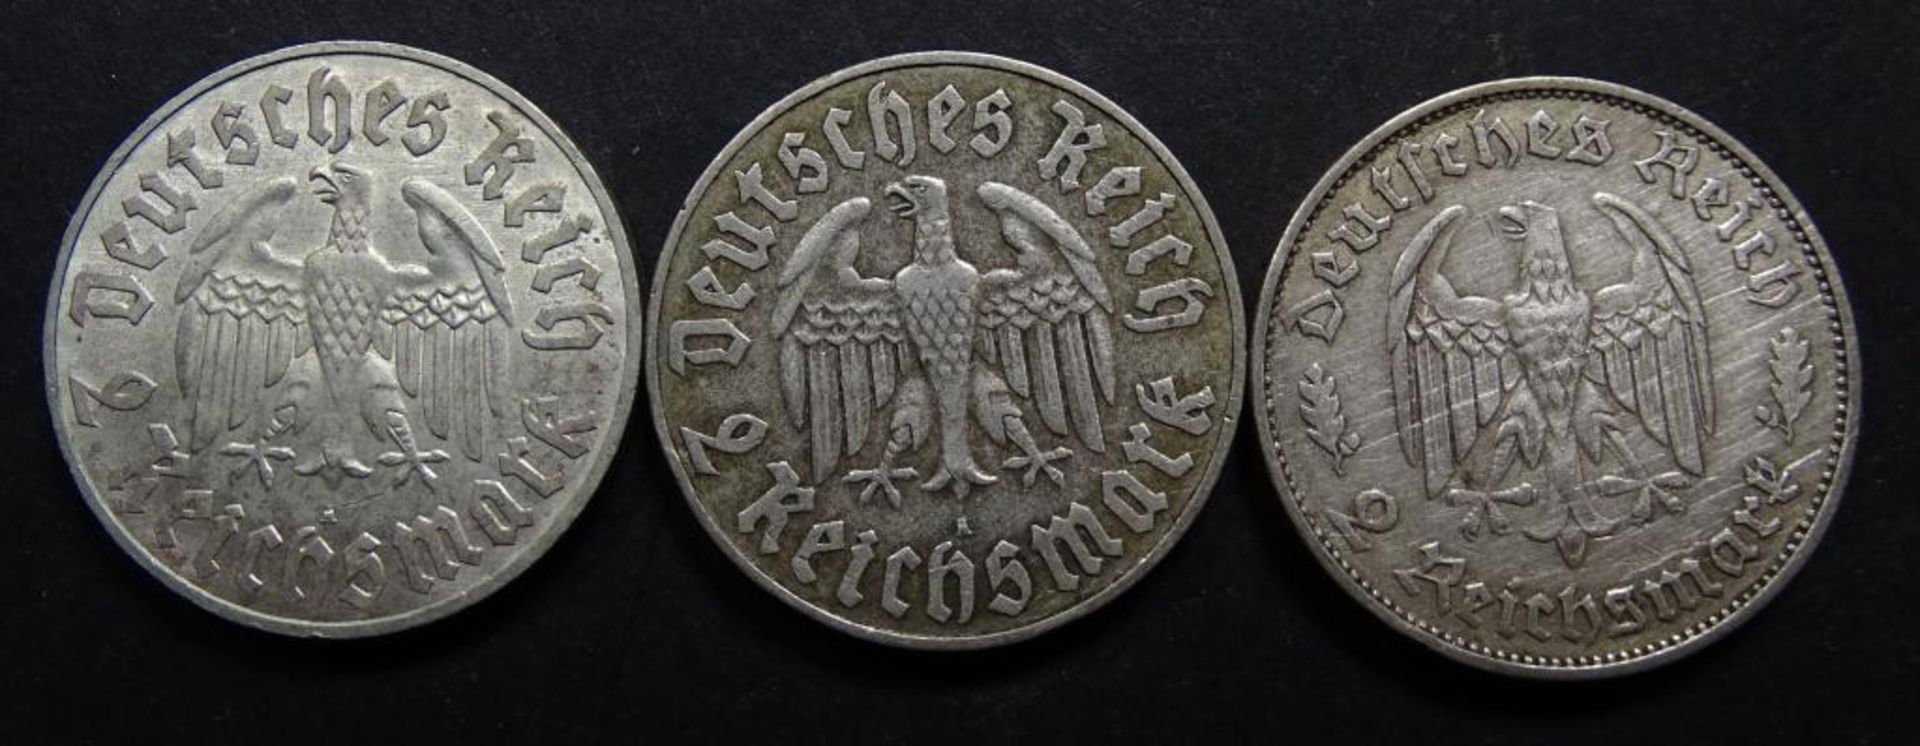 3x 2 Reichspfennig, Martin Luther,Schiller,vz